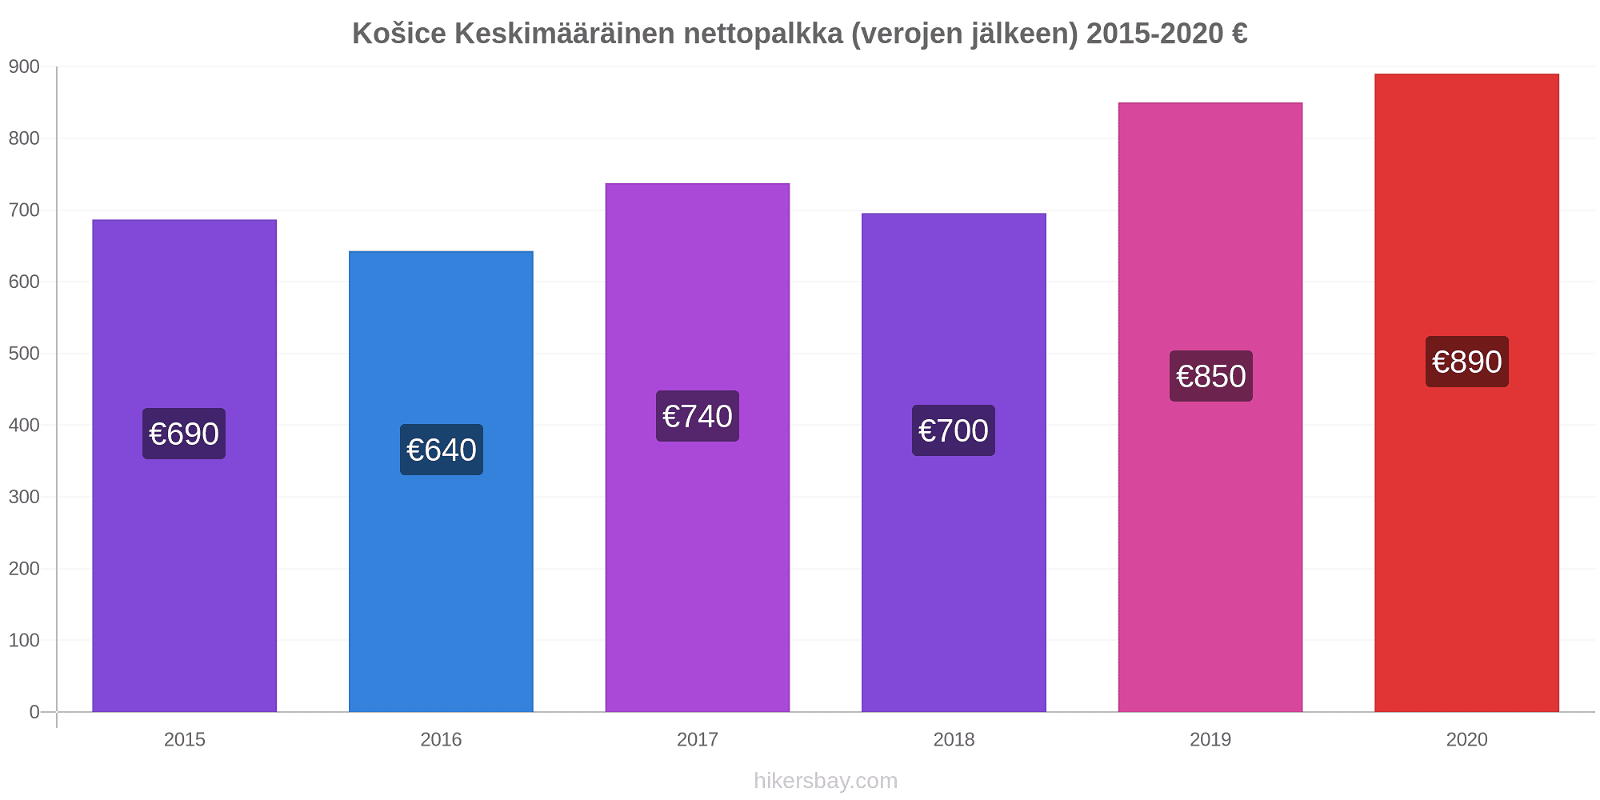 Košice hintojen muutokset Keskimääräinen nettopalkka (verojen jälkeen) hikersbay.com